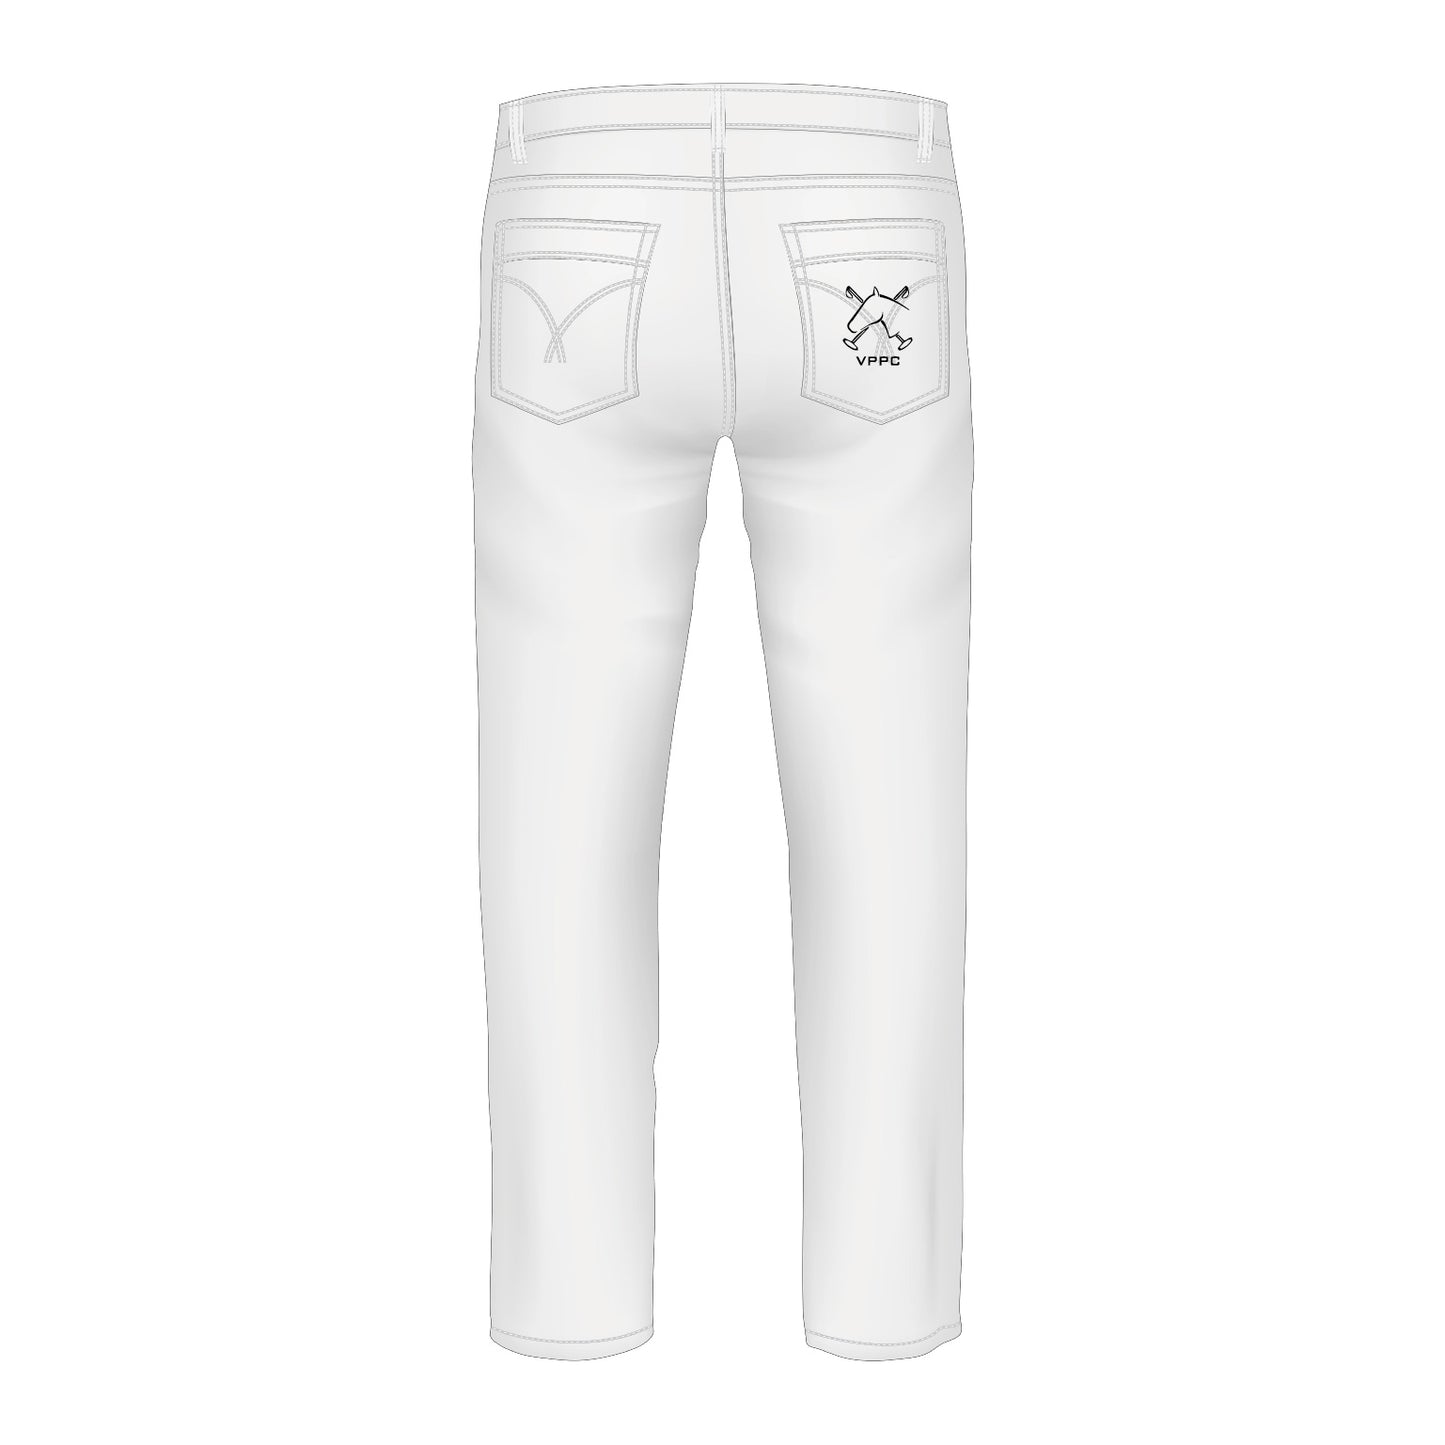 Vaux Park White Jeans